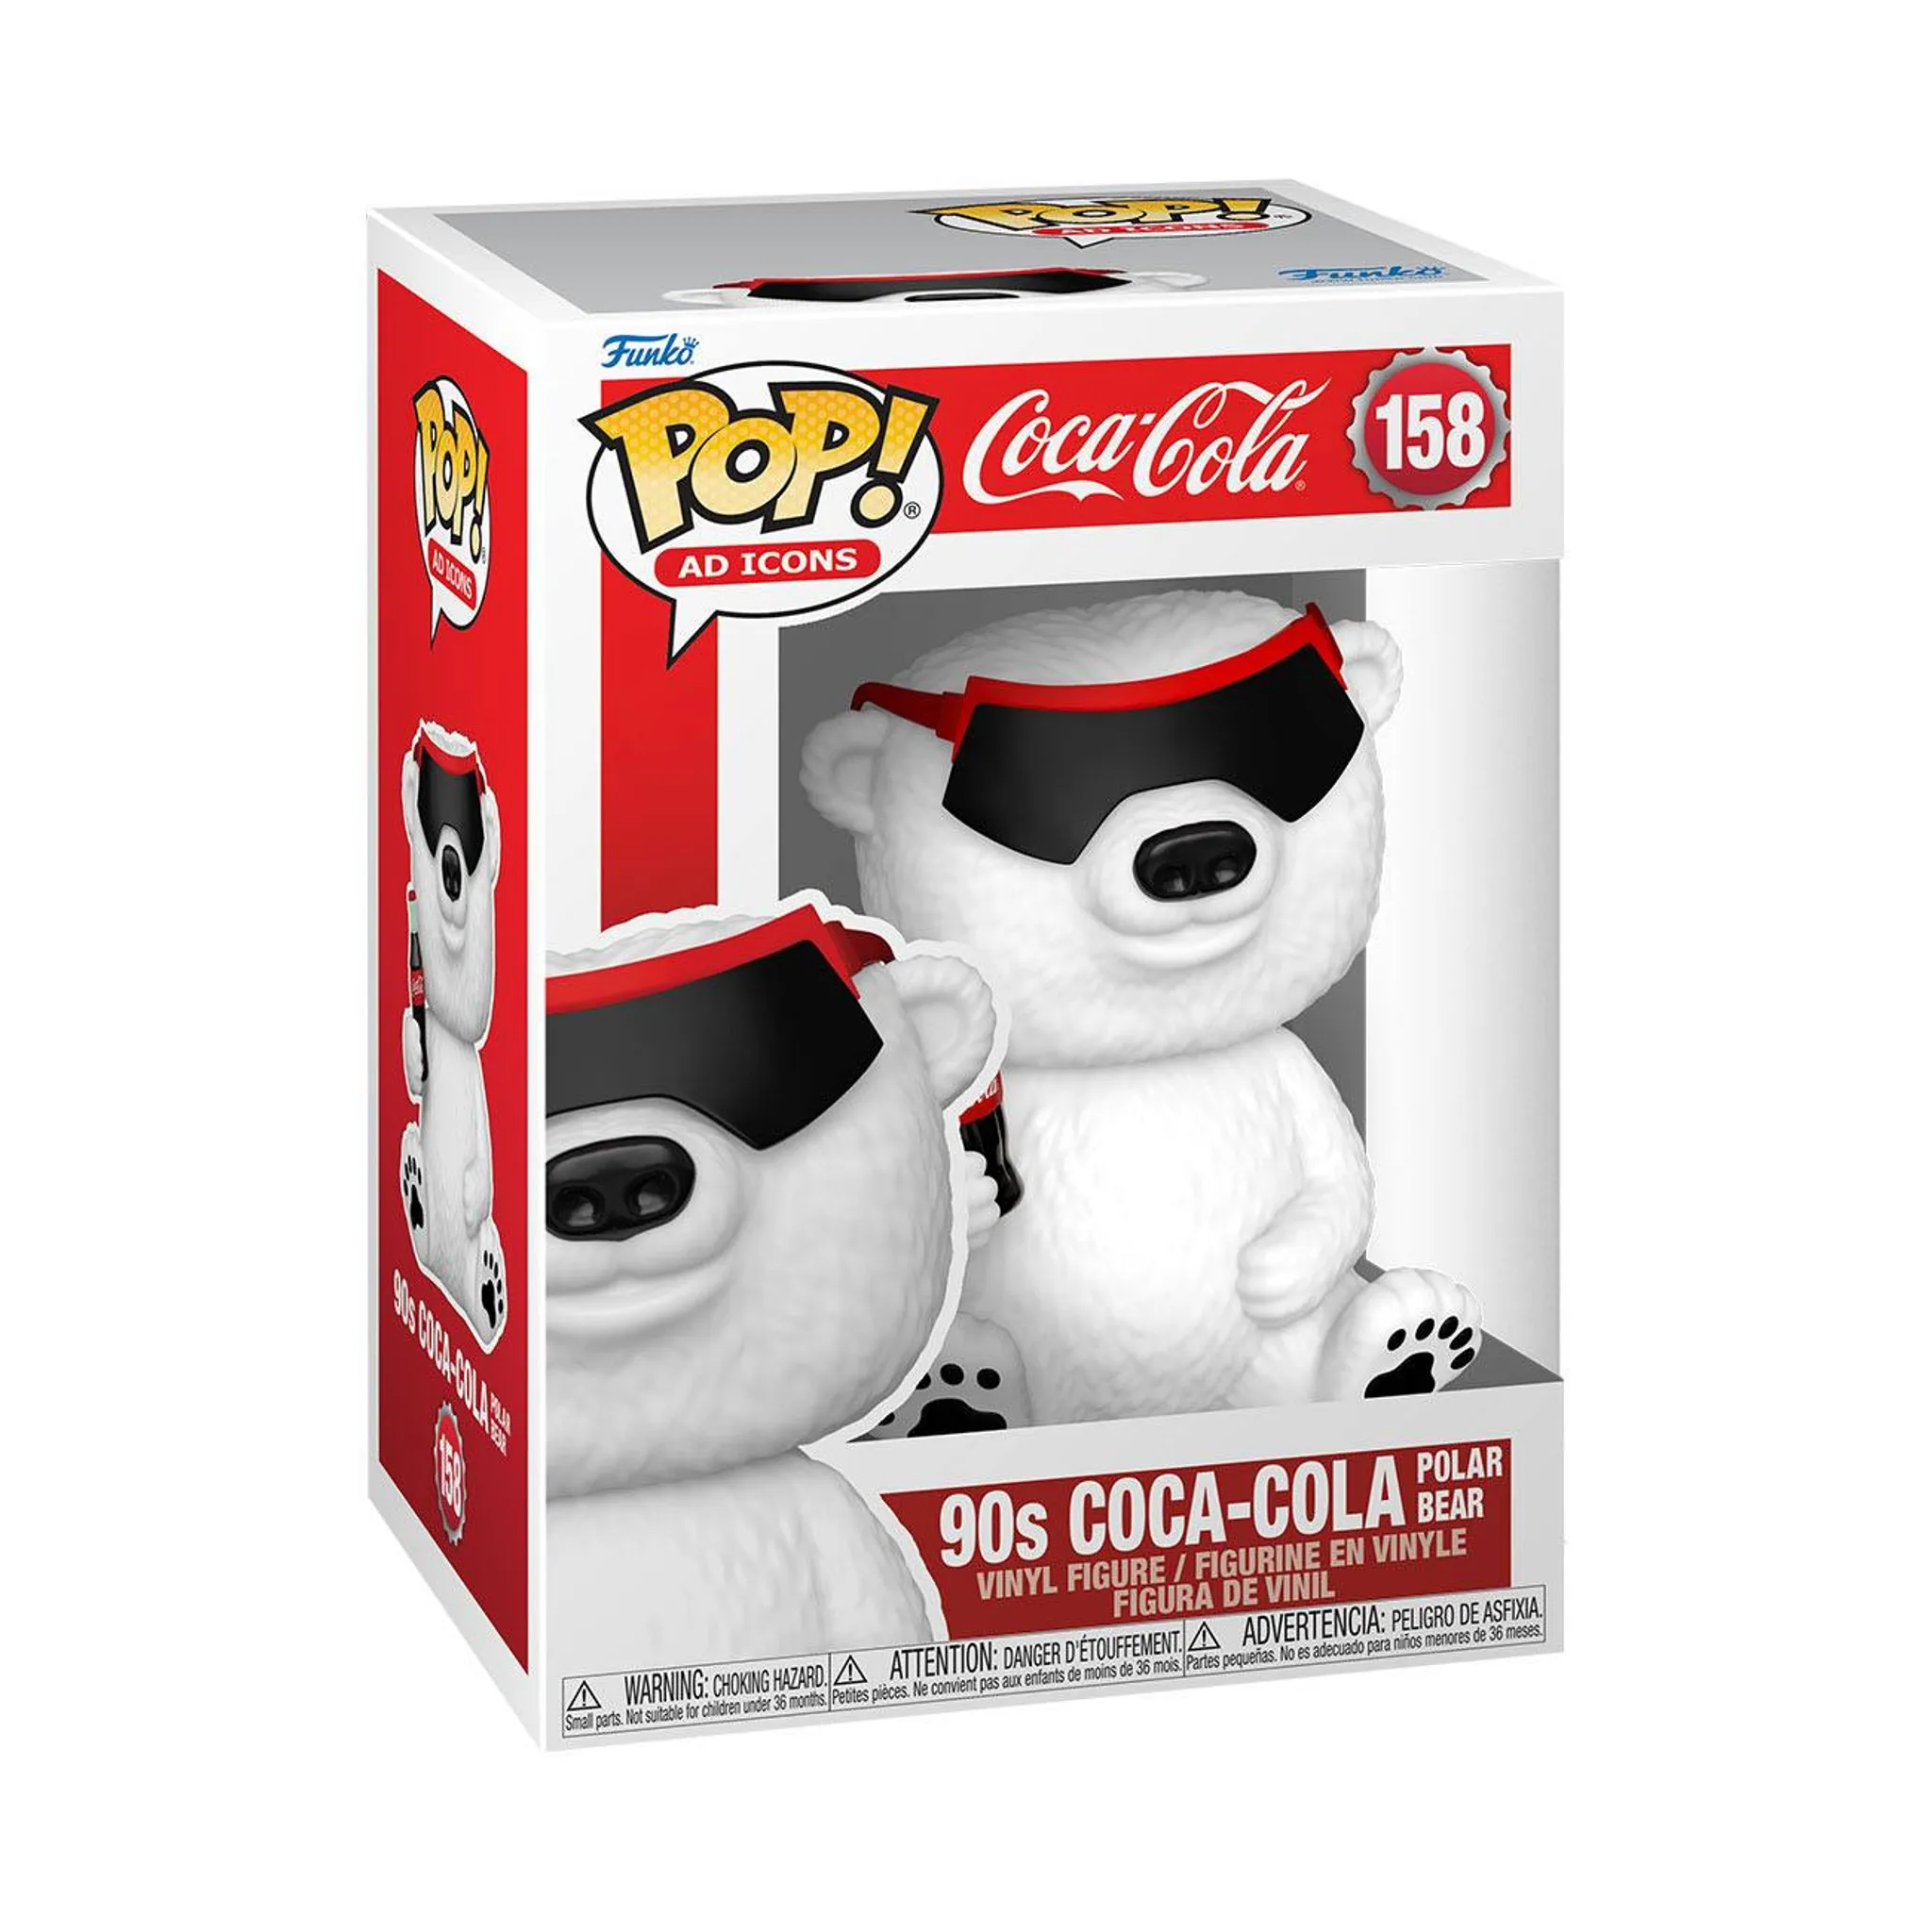 Coca-Cola - 90s Coca-Cola Polar Bear 158 